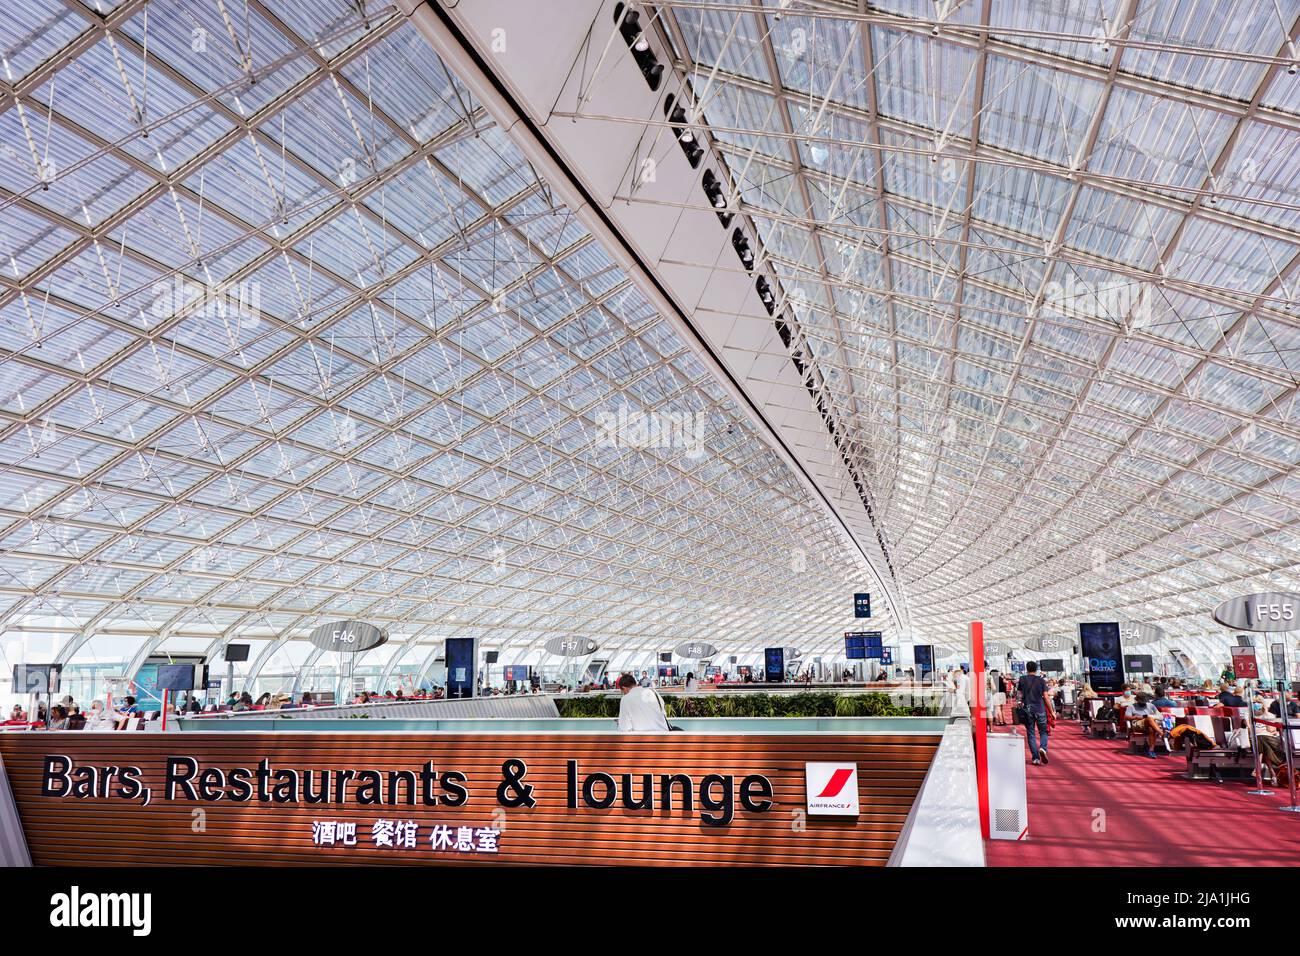 Un des terminaux de l'aéroport 'Charles de Gaulle' (également connu sous le nom d'aéroport de Roissy), Paris, France, Europe. Banque D'Images